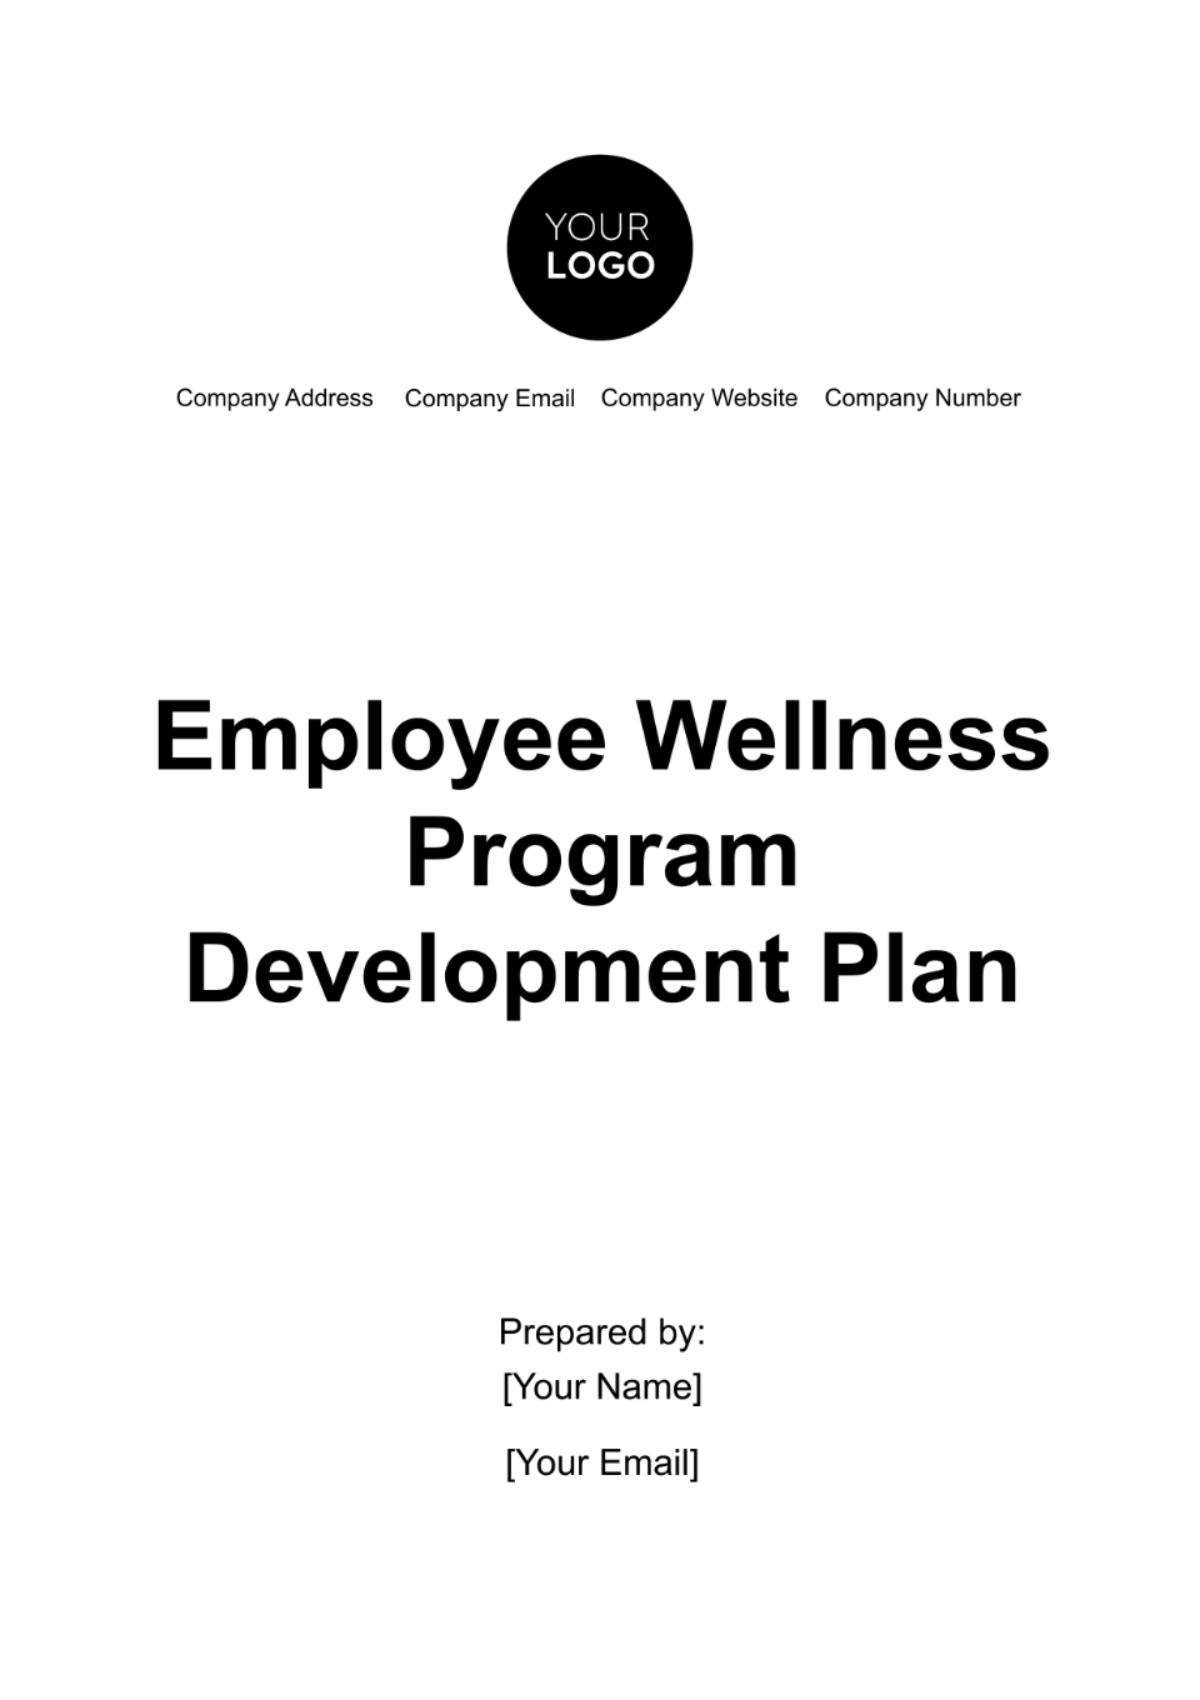 Employee Wellness Program Development Plan Template